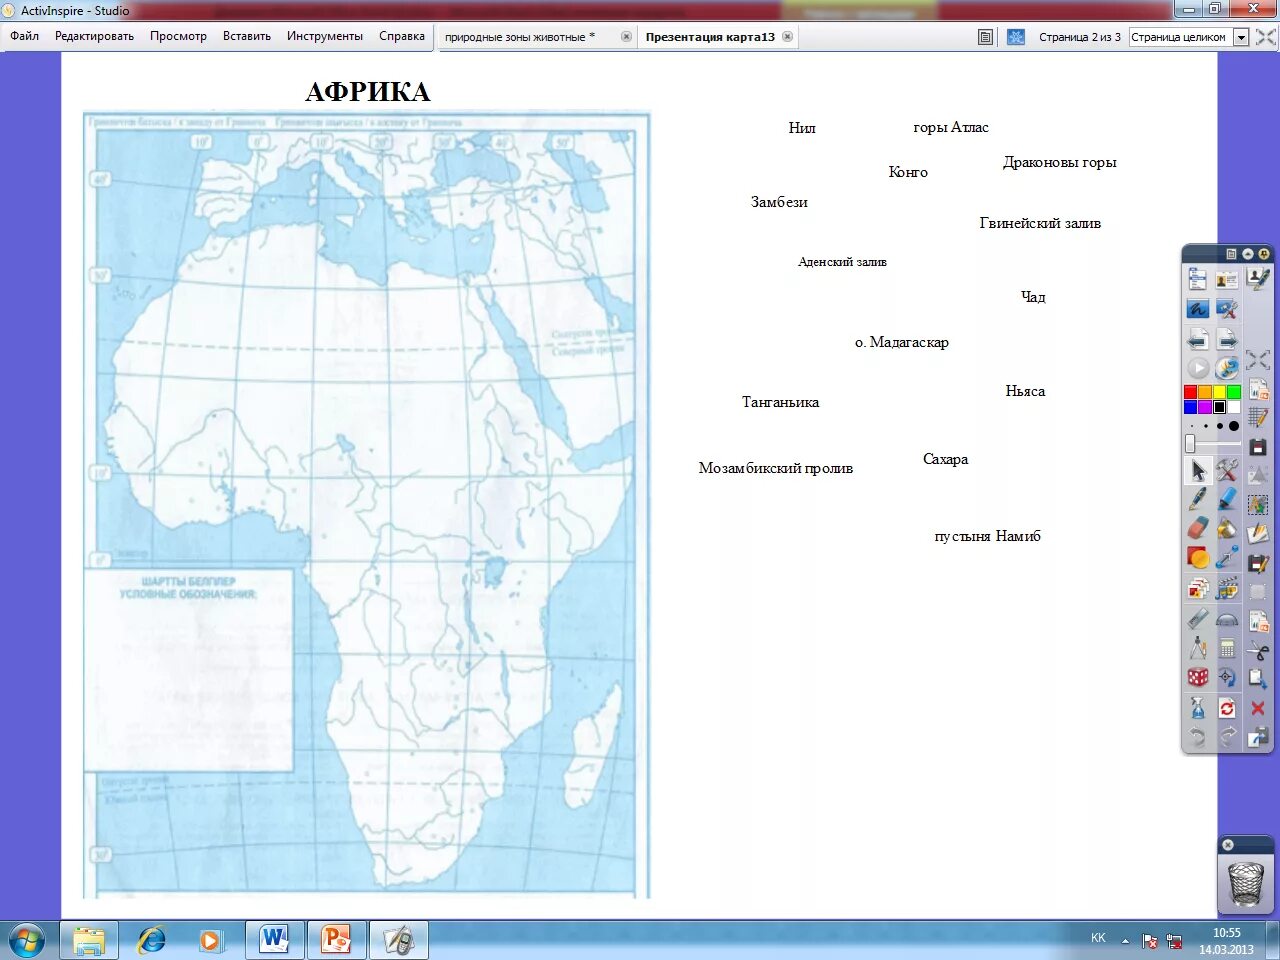 Номенклатура Африка 7 класс география на контурной карте. Номенклатура Африки 7 класс на контурной карте. Номенклатура Африки 7 класс география на карте. Номенклатура Африки 7 класс география.